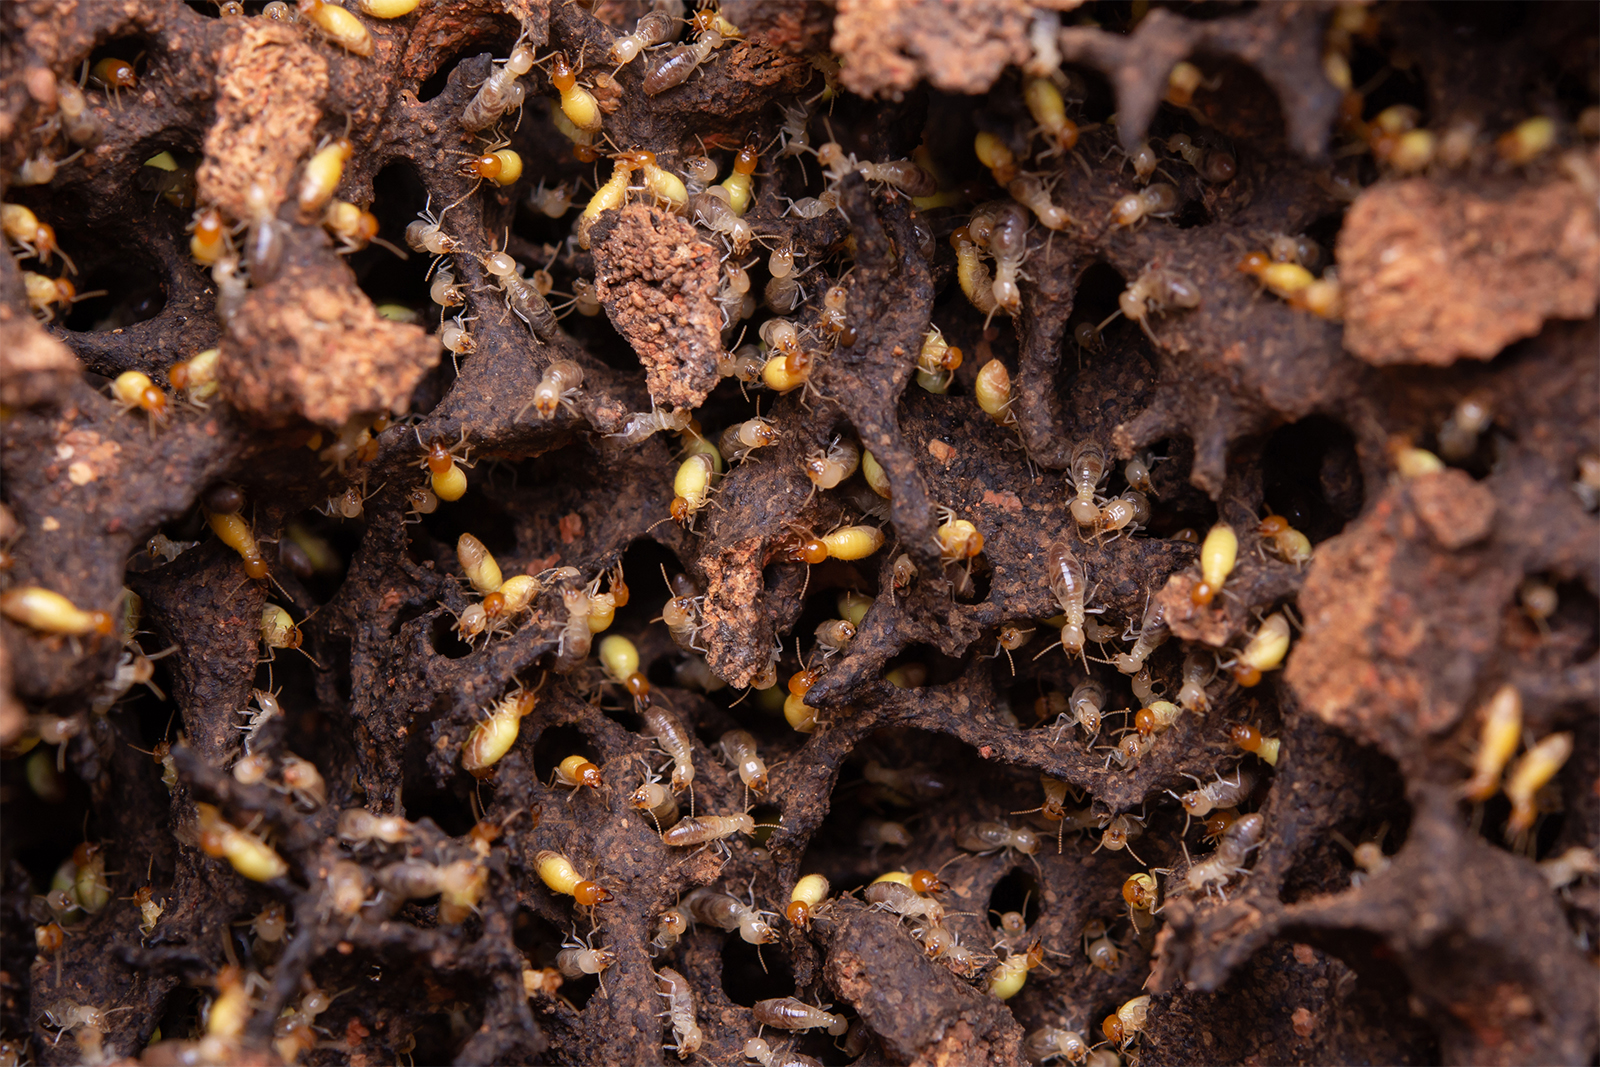 Do Termites Eat Plastic?